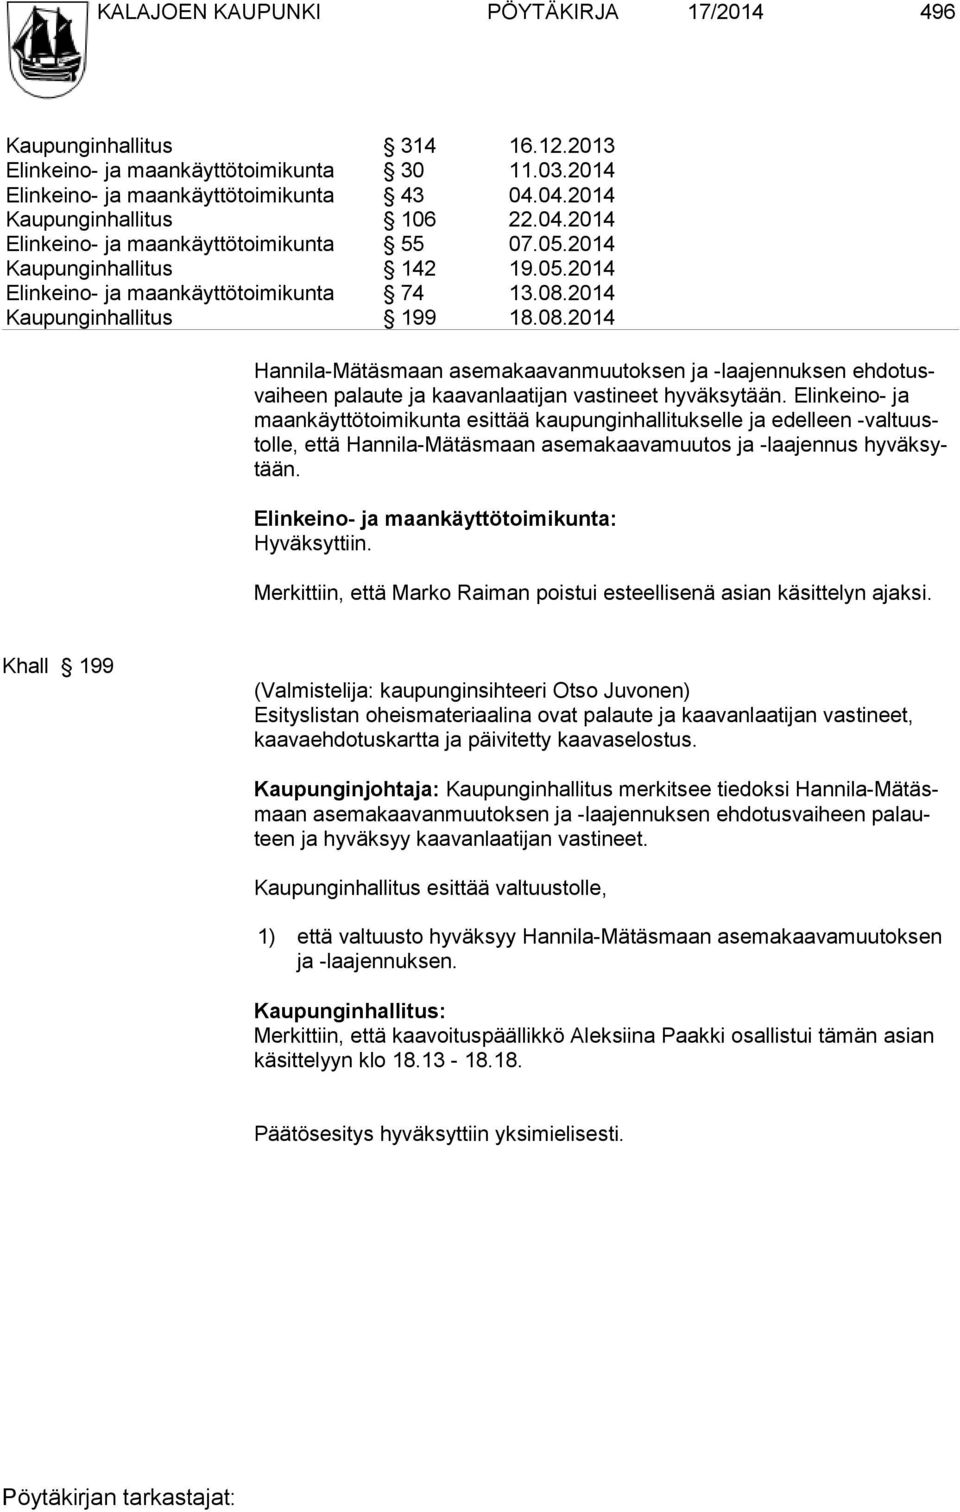 2014 Kaupunginhallitus 199 18.08.2014 Hannila-Mätäsmaan asemakaavanmuutoksen ja -laajennuksen ehdotusvaiheen palaute ja kaavanlaatijan vastineet hyväksytään.